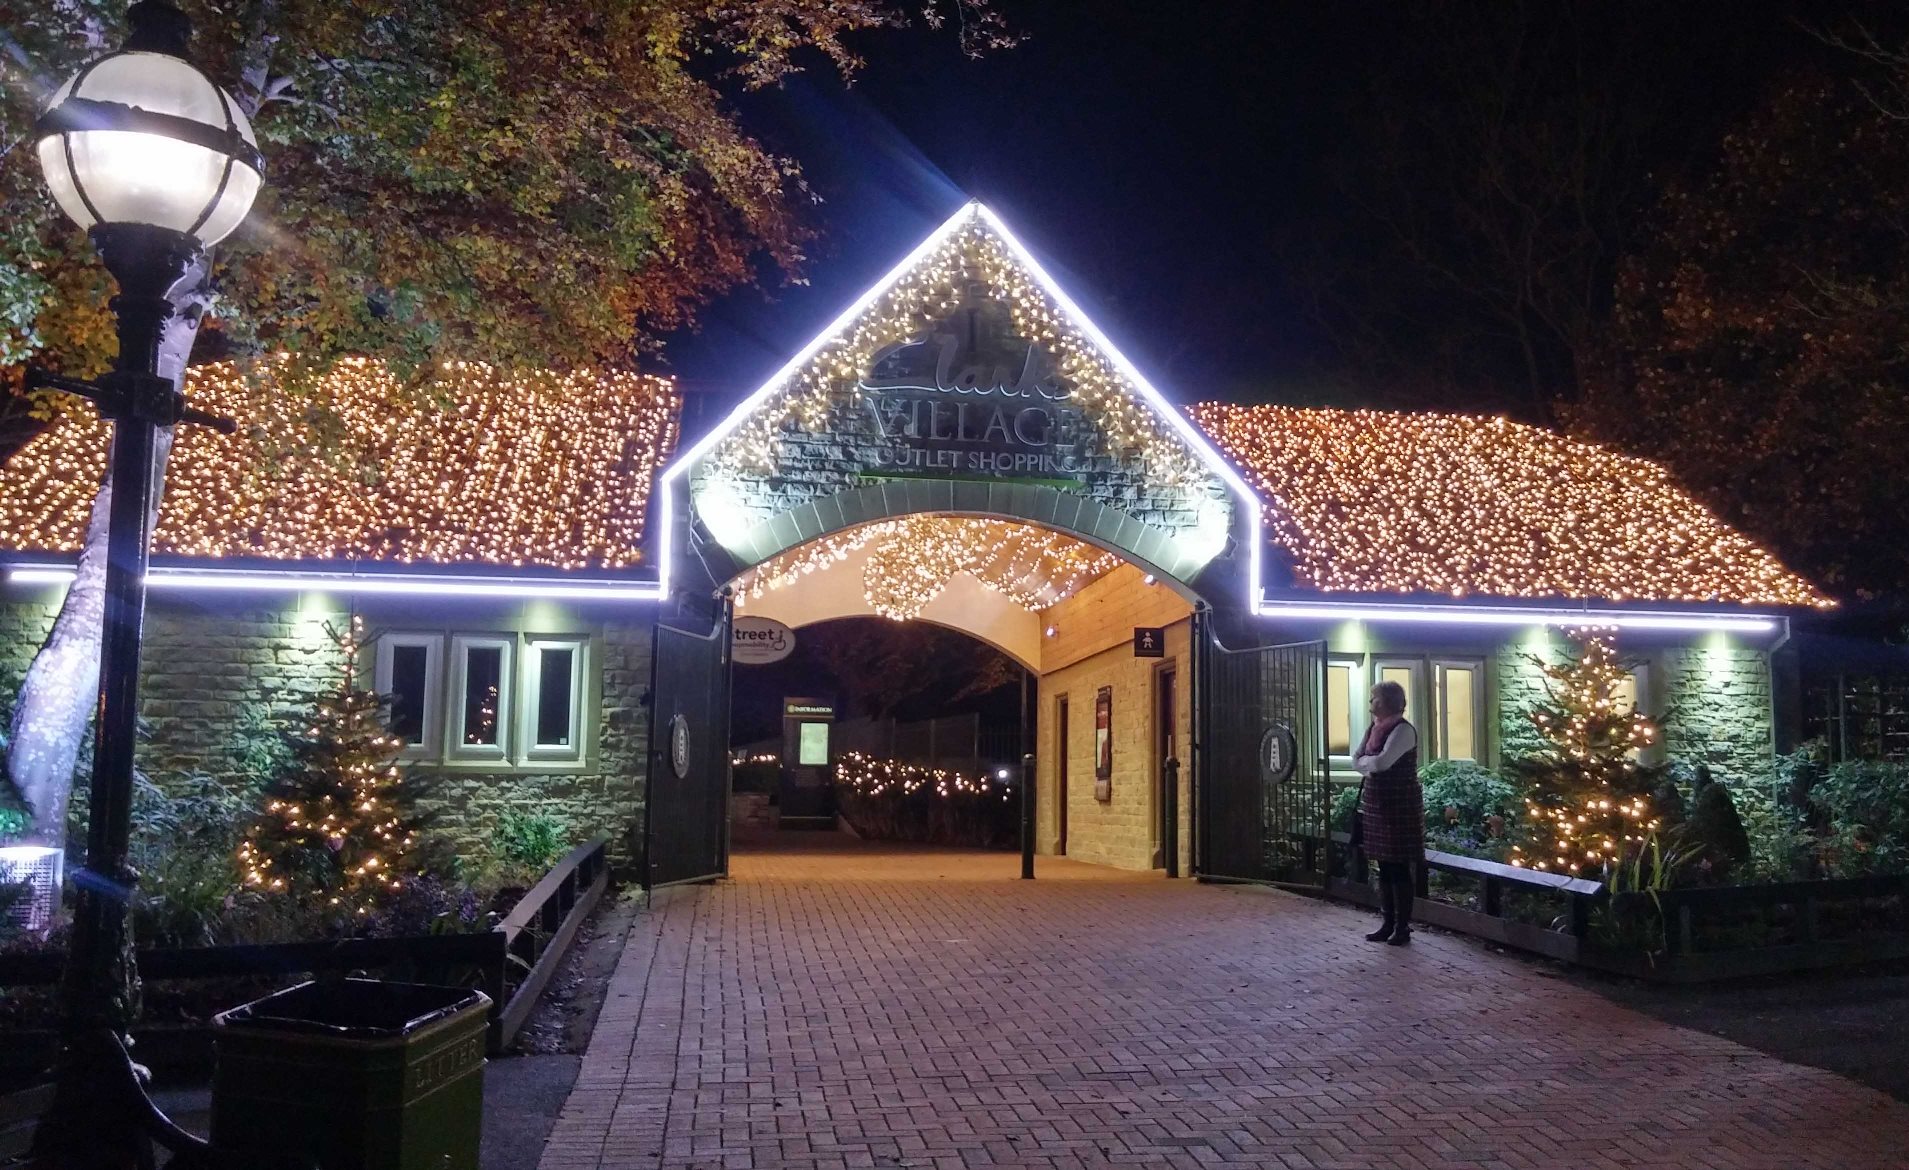 Christmas lights installation at Clarks Village